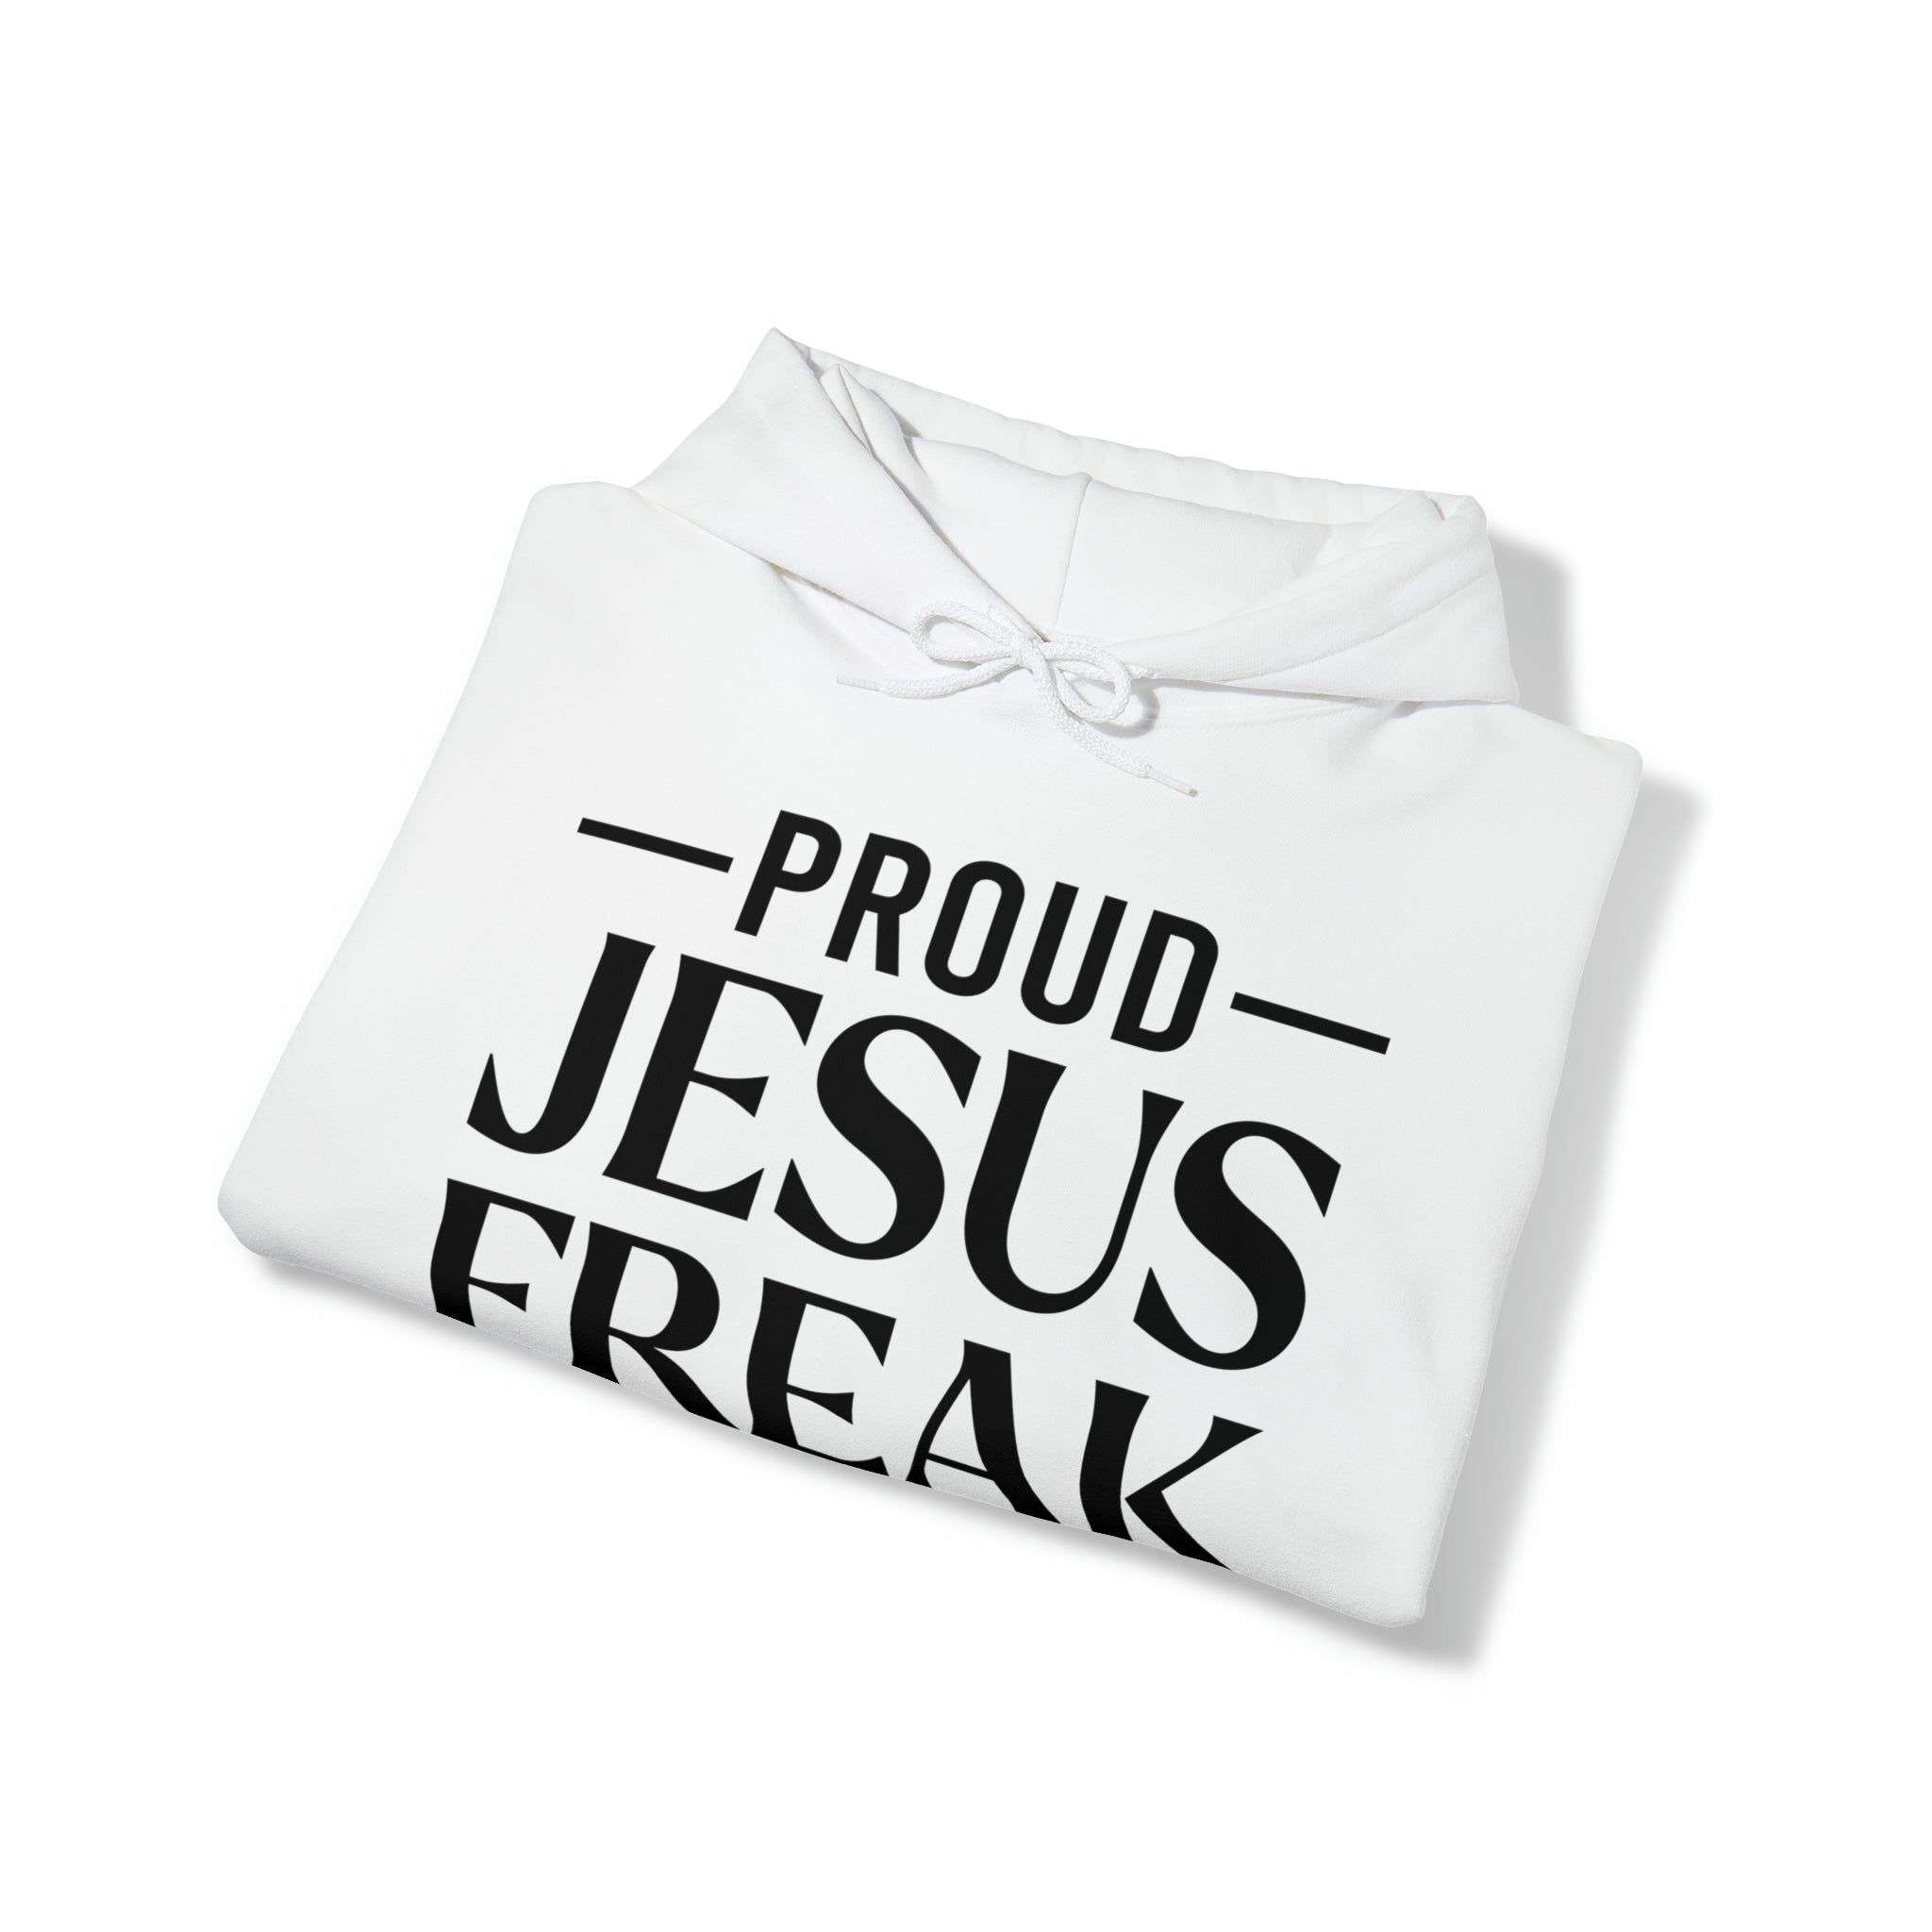 Proud Jesus Freak Hoodie